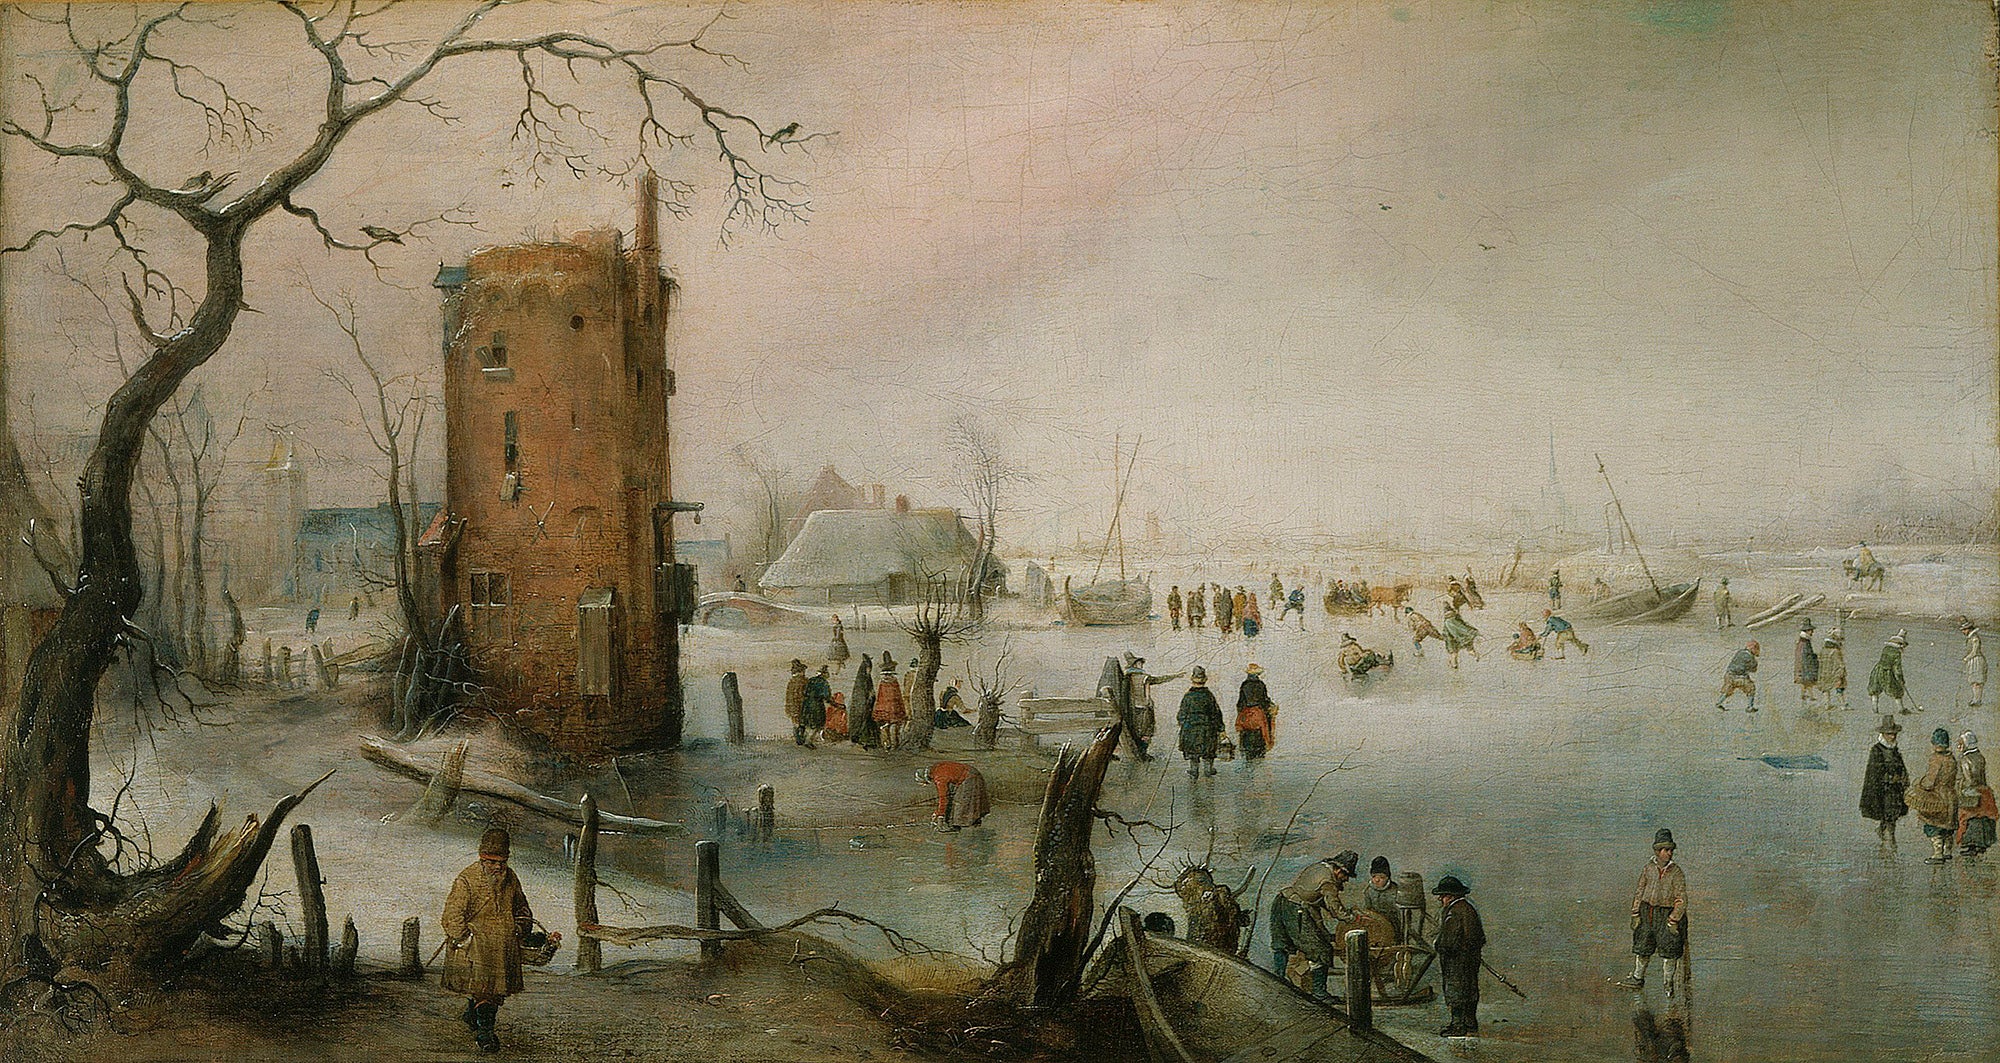 Skating Near a Town by Hendrick Avercamp, between circa 1610 and circa 1620